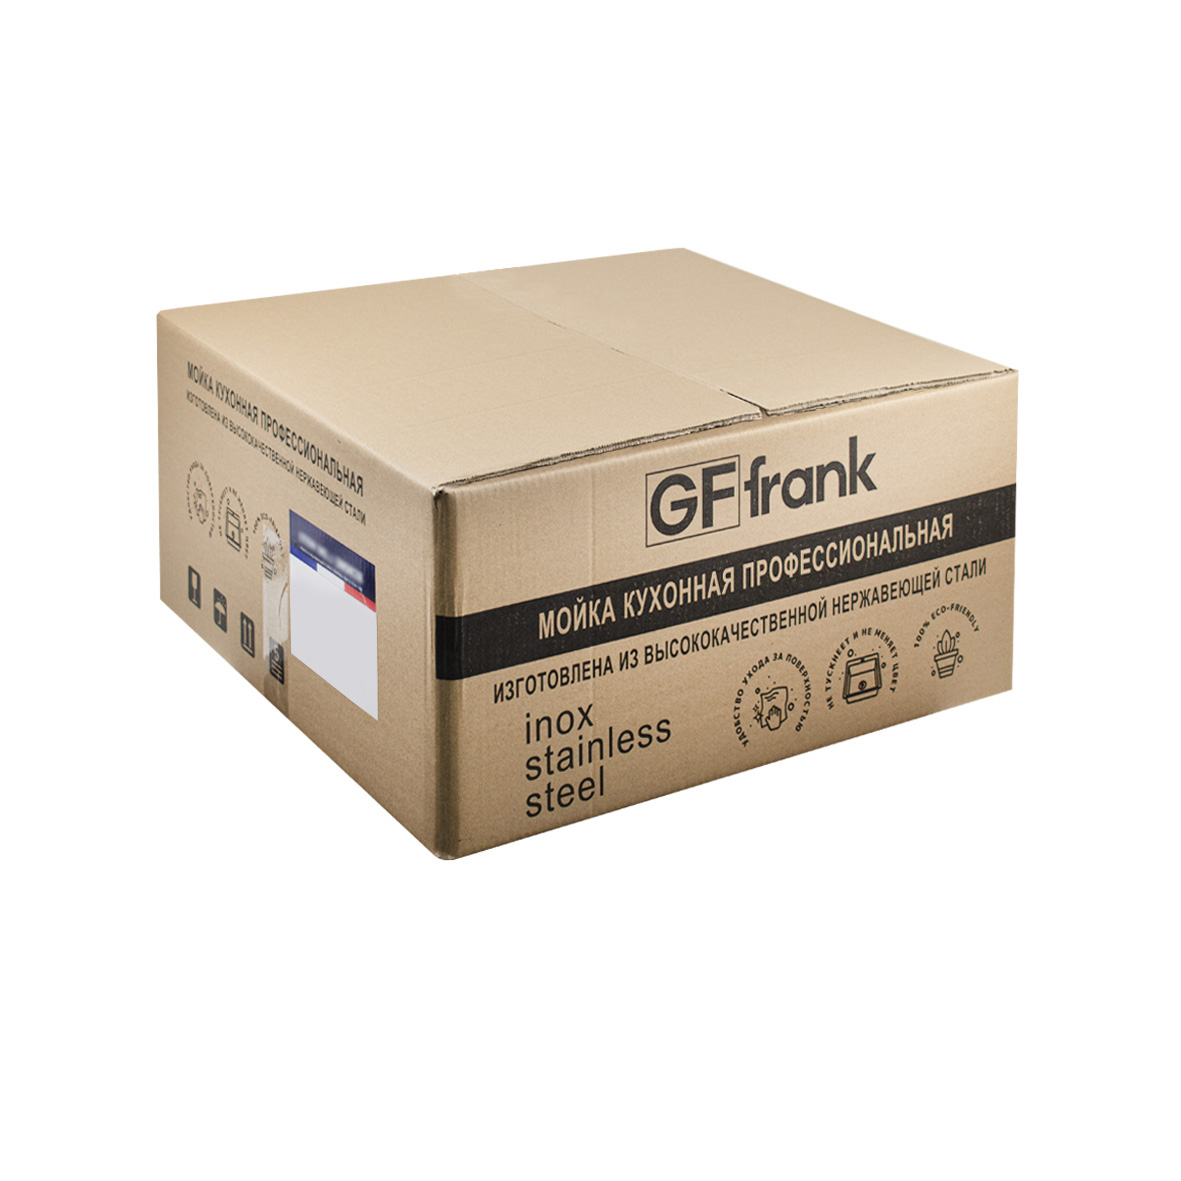 GFfrank - Мойка врезная 60х50 см цвет графит, толщина 2,0 х 0,6 мм, глубина 200 мм + большой сифон с переливом 